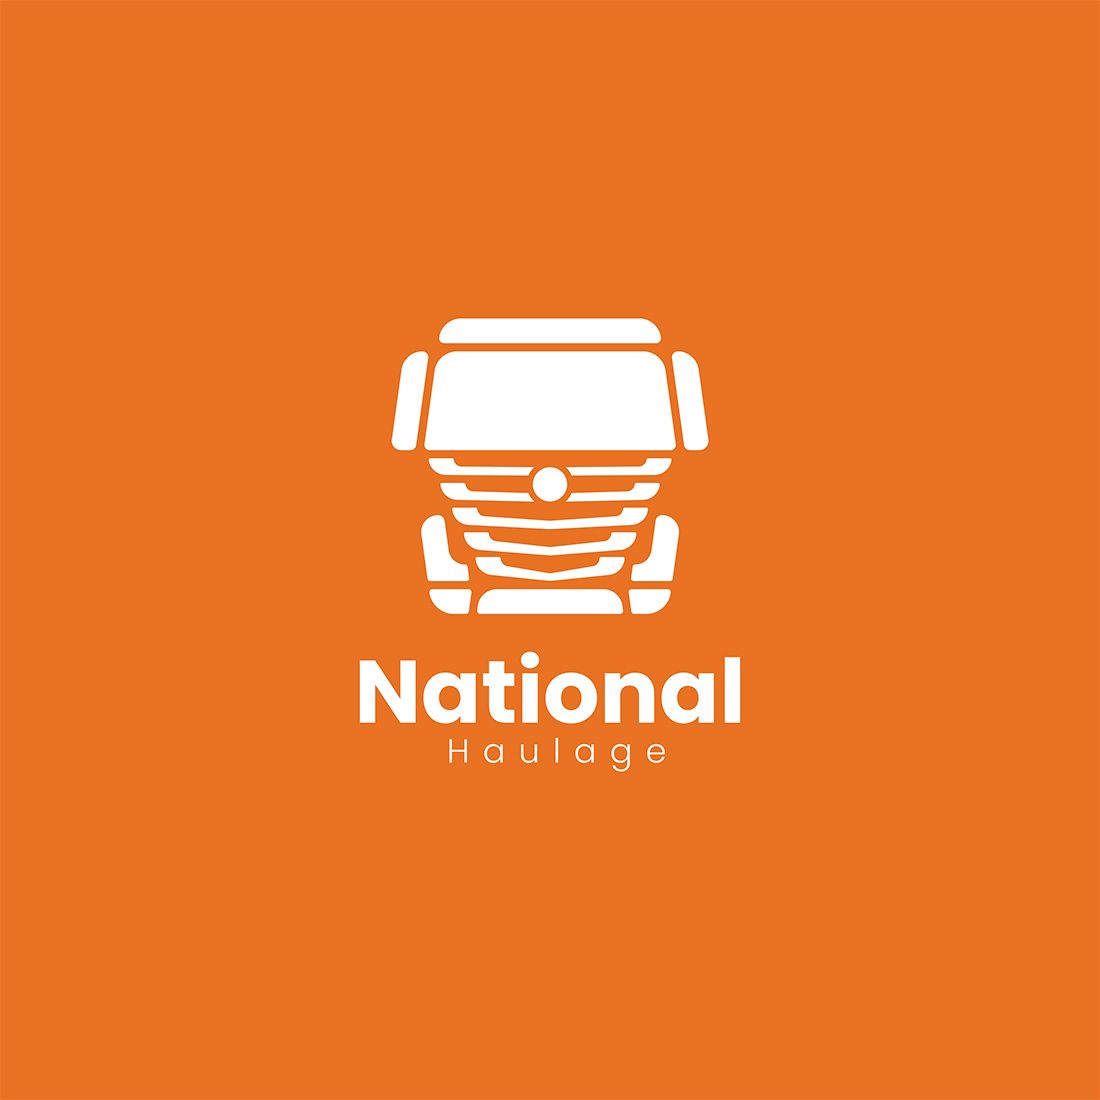 National Haulage Logo with orange background.